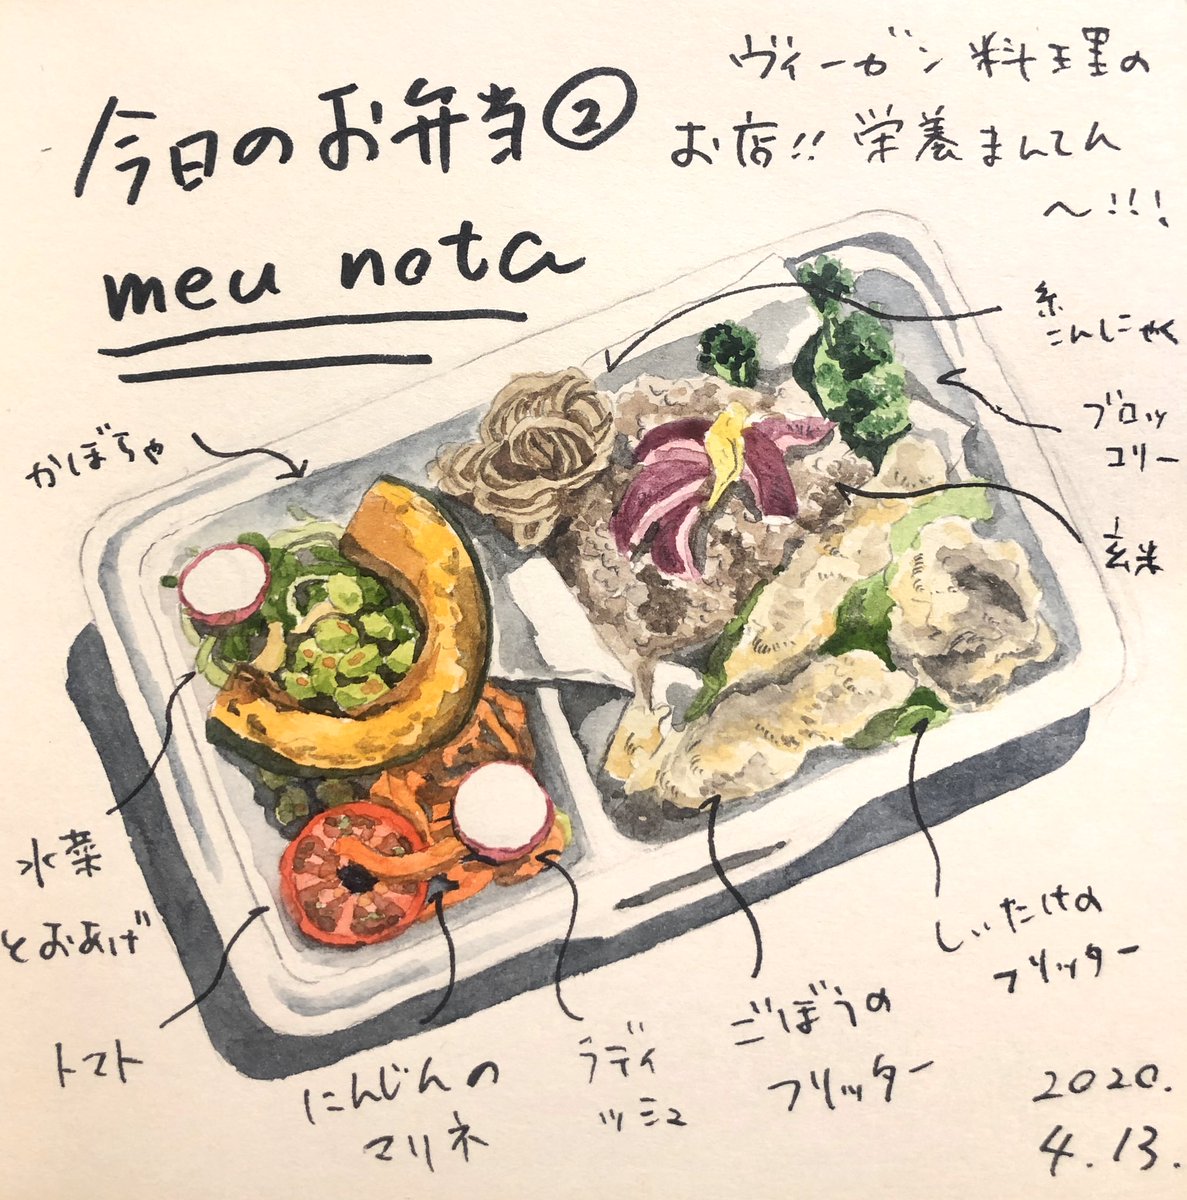 Enya Honami 塩谷 歩波 A Twitter 今日のお弁当 Meunotaさん Meunota0227 ヴィーガンスタイルの おしゃれなカフェ 野菜が足りないって時はここに駆け込みます 日替わり弁当も手の込んだ野菜メニューがたっぷり 美味しいし体にも優しくてペロッと食べてしまいます